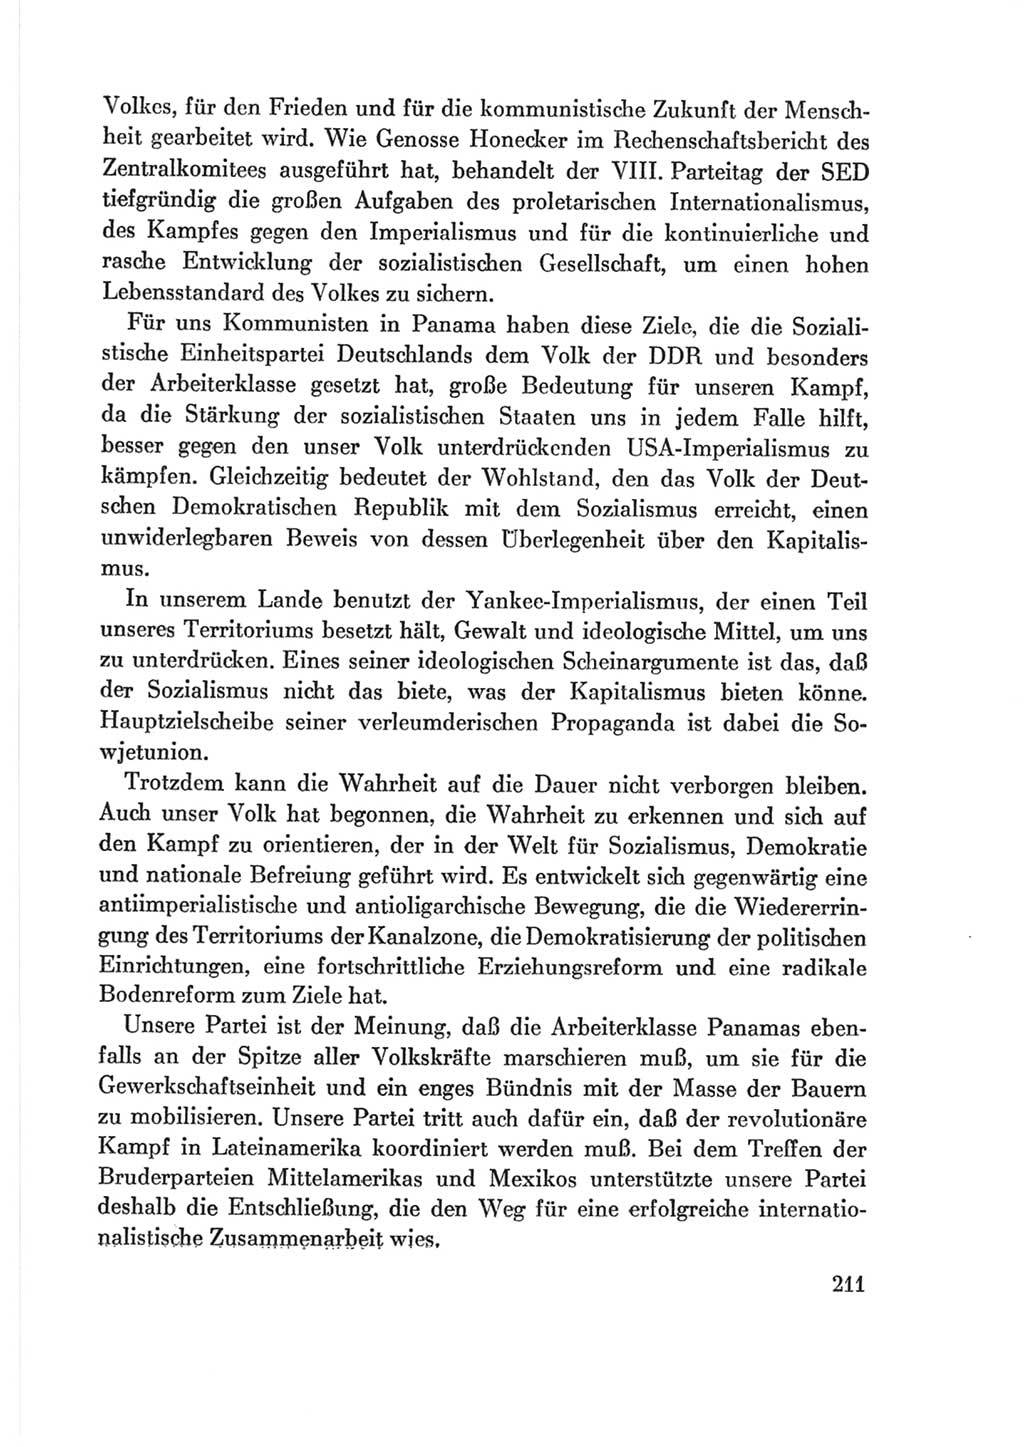 Protokoll der Verhandlungen des Ⅷ. Parteitages der Sozialistischen Einheitspartei Deutschlands (SED) [Deutsche Demokratische Republik (DDR)] 1971, Band 2, Seite 211 (Prot. Verh. Ⅷ. PT SED DDR 1971, Bd. 2, S. 211)